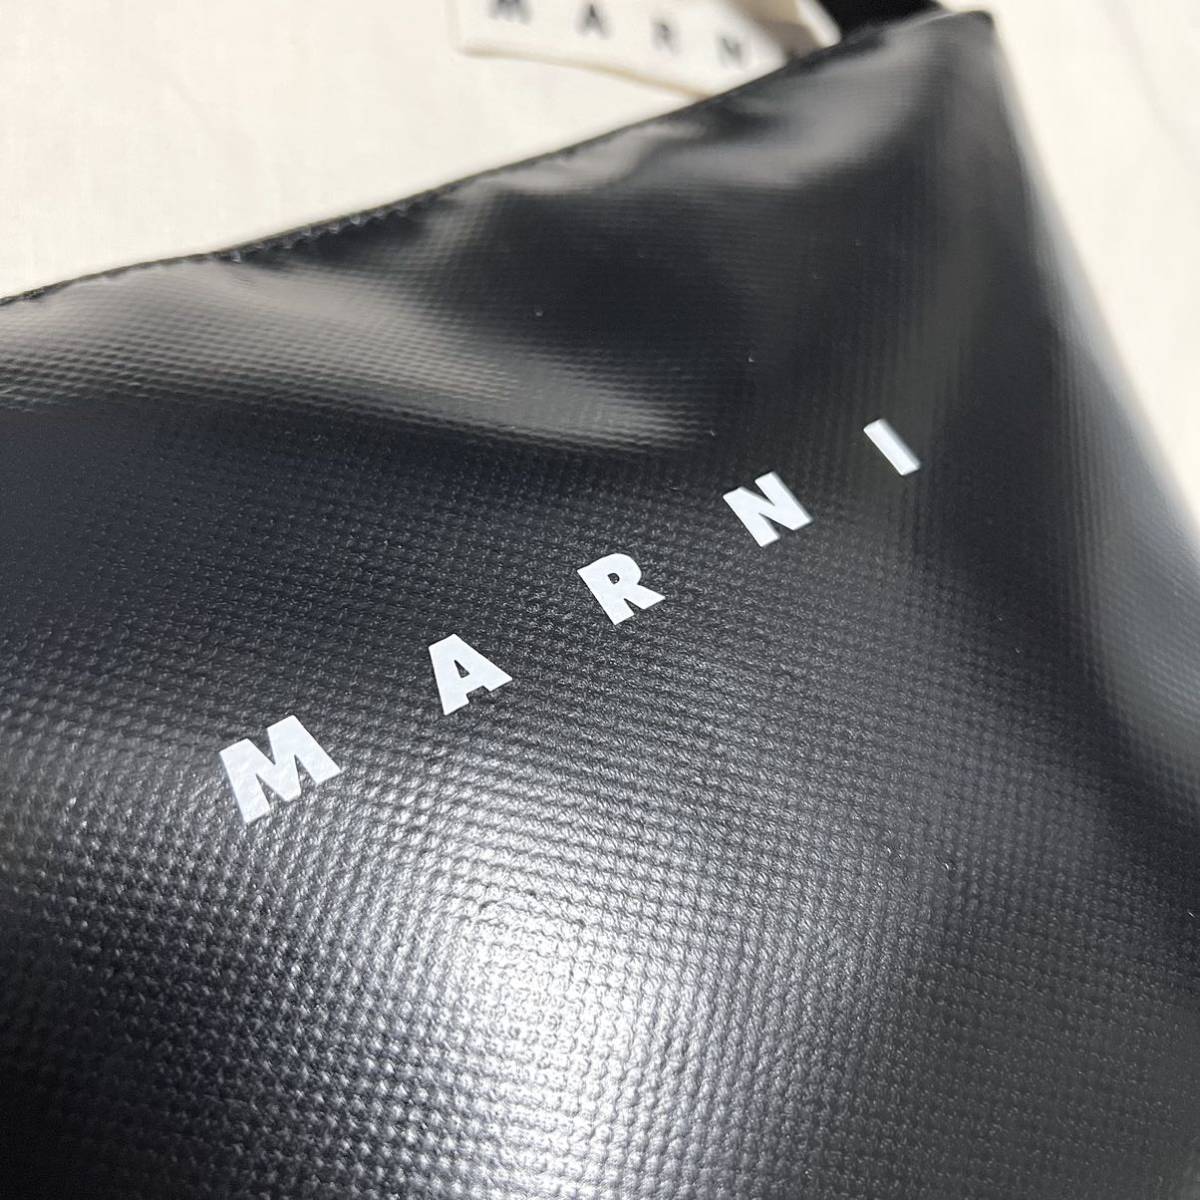  новый товар Marni MARNI TRIBECA сумка на плечо PVCbai цвет чёрный синий tech s коричневый -do сумка черный сумка на плечо Logo водонепроницаемый плечо ..